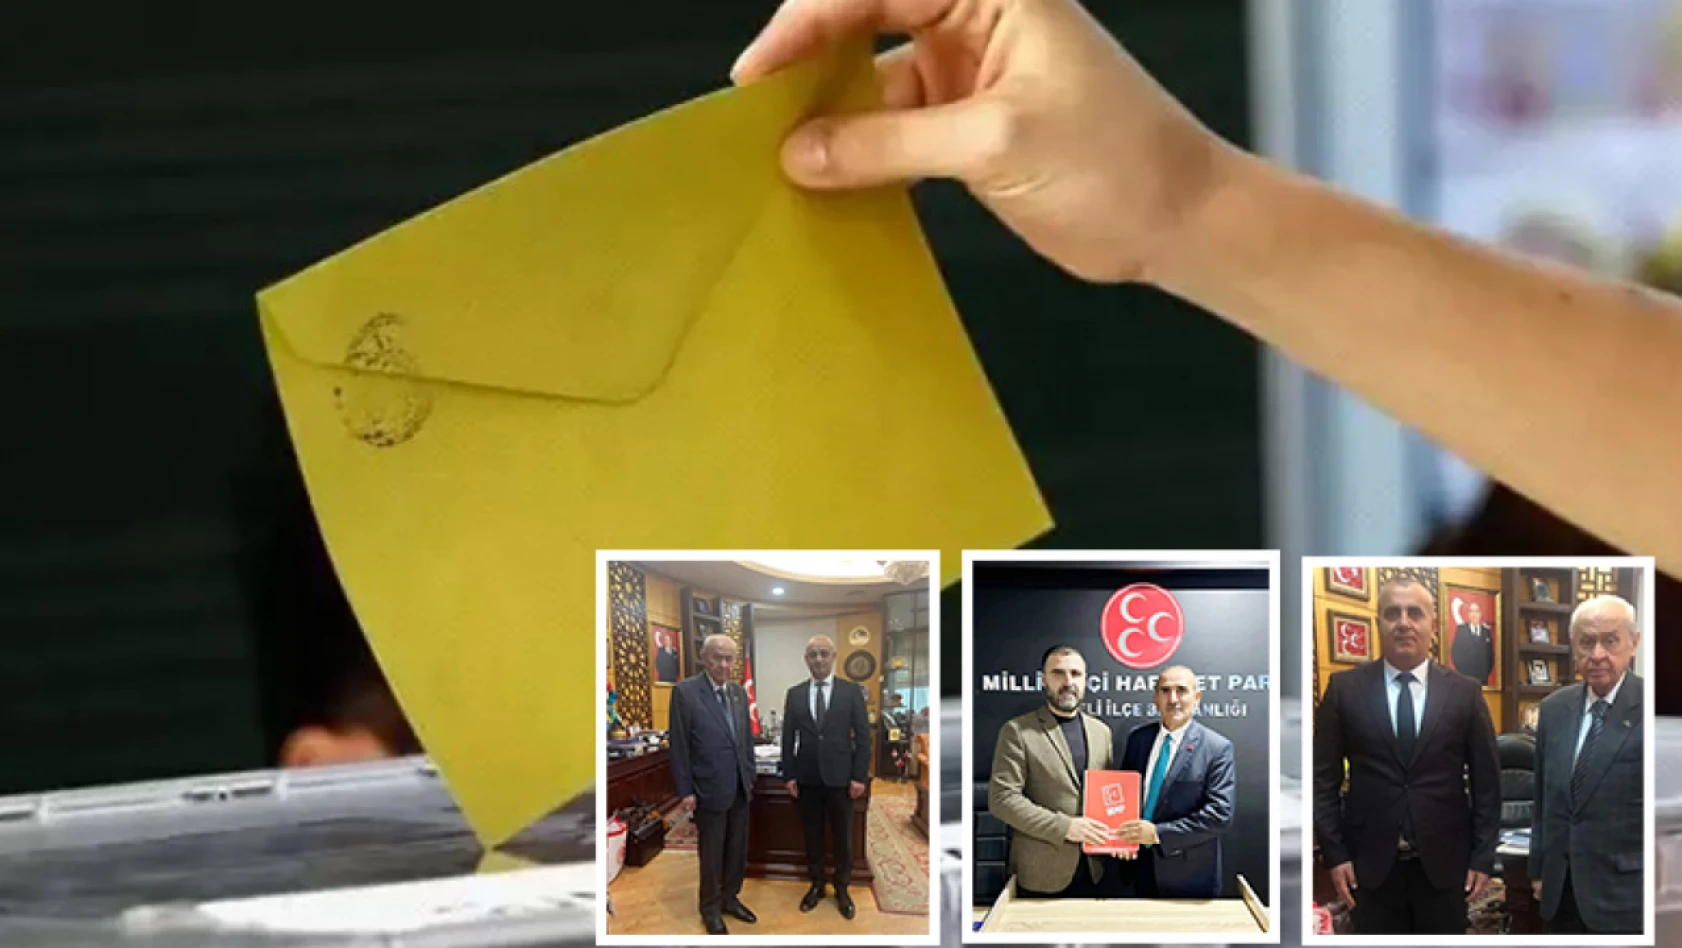 MHP'de adaylar ortaya çıkıyor - Yerel seçim haberleri